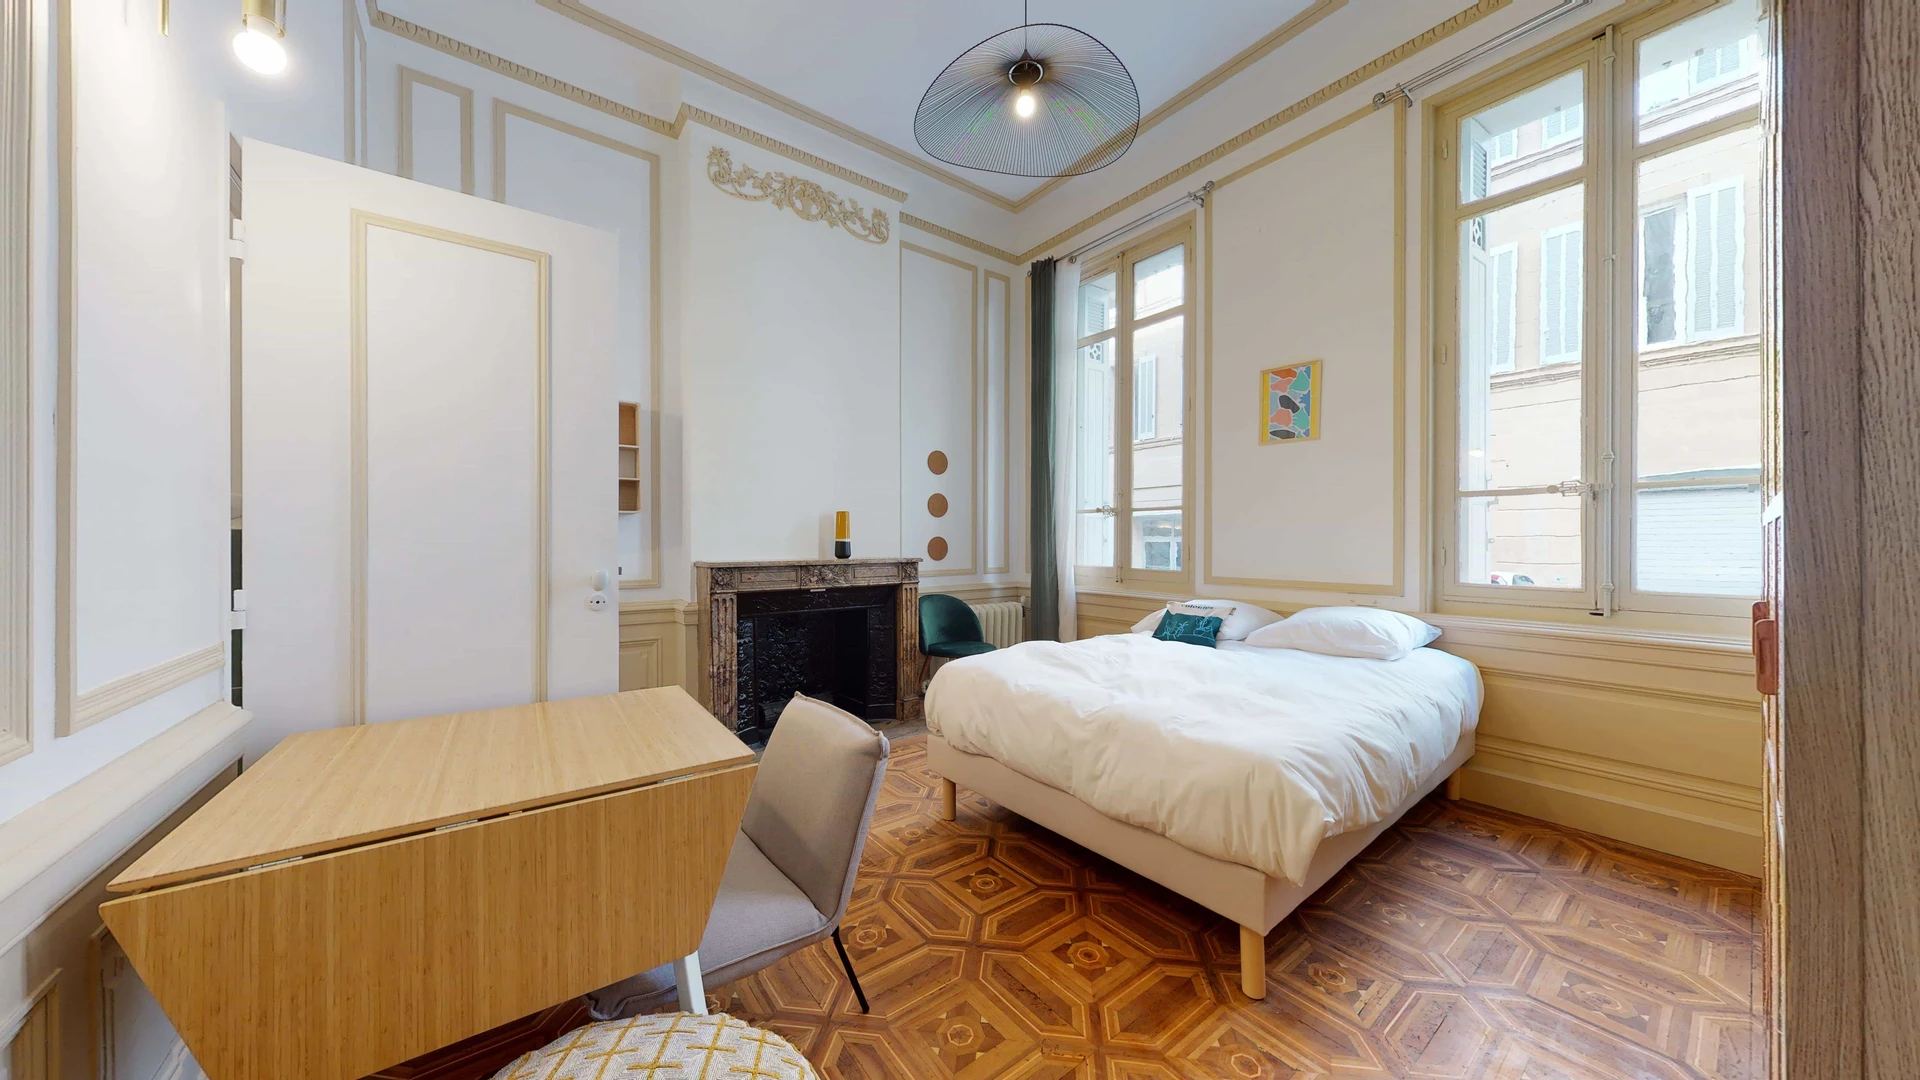 Alquiler de habitación en piso compartido en Marsella